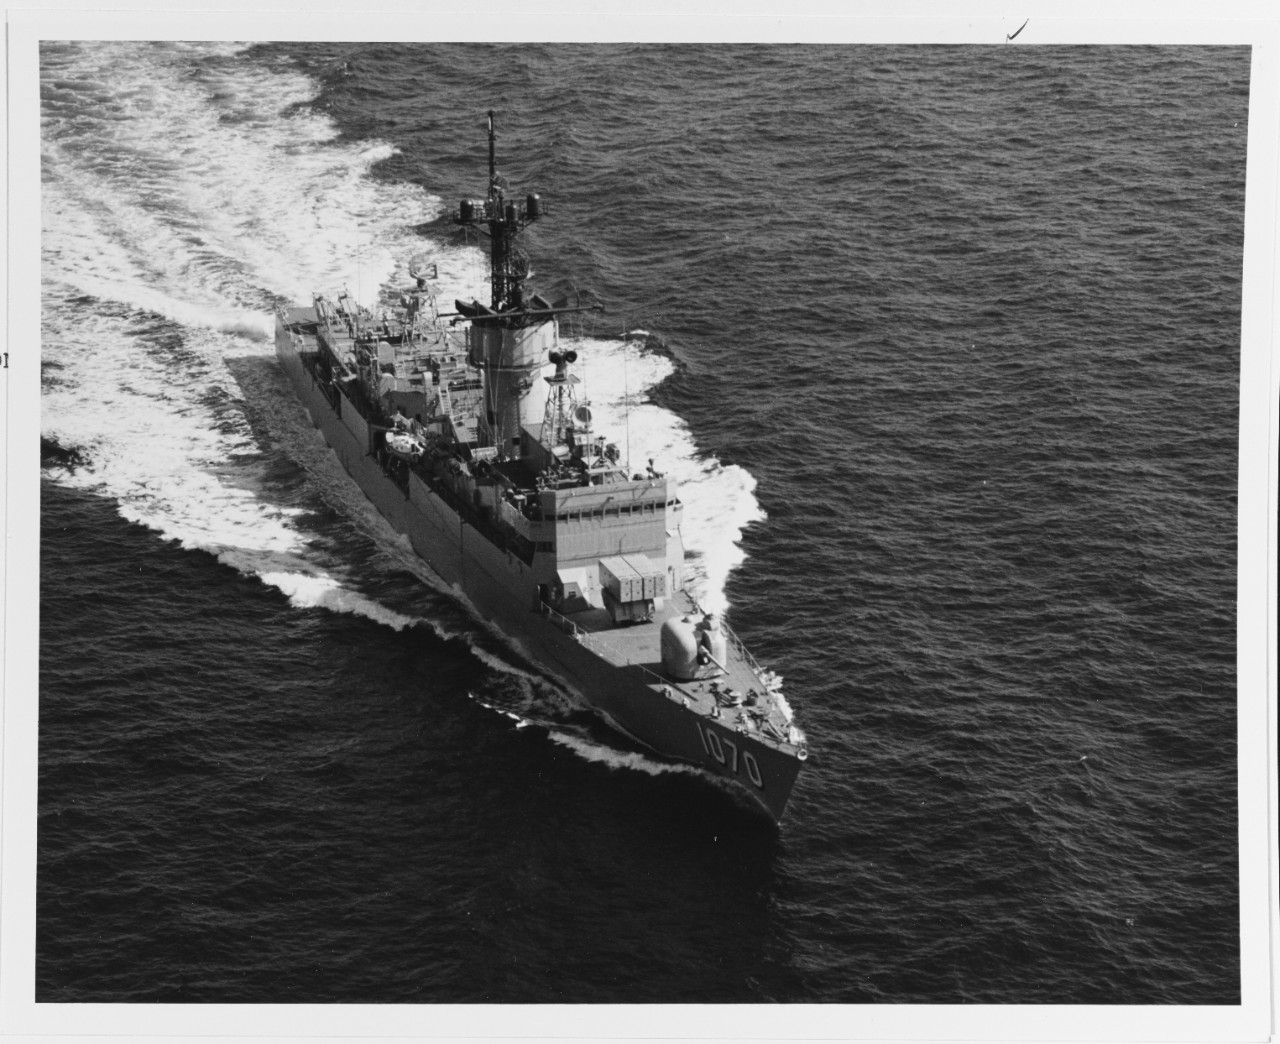 USS DOWNES (DE-1070)